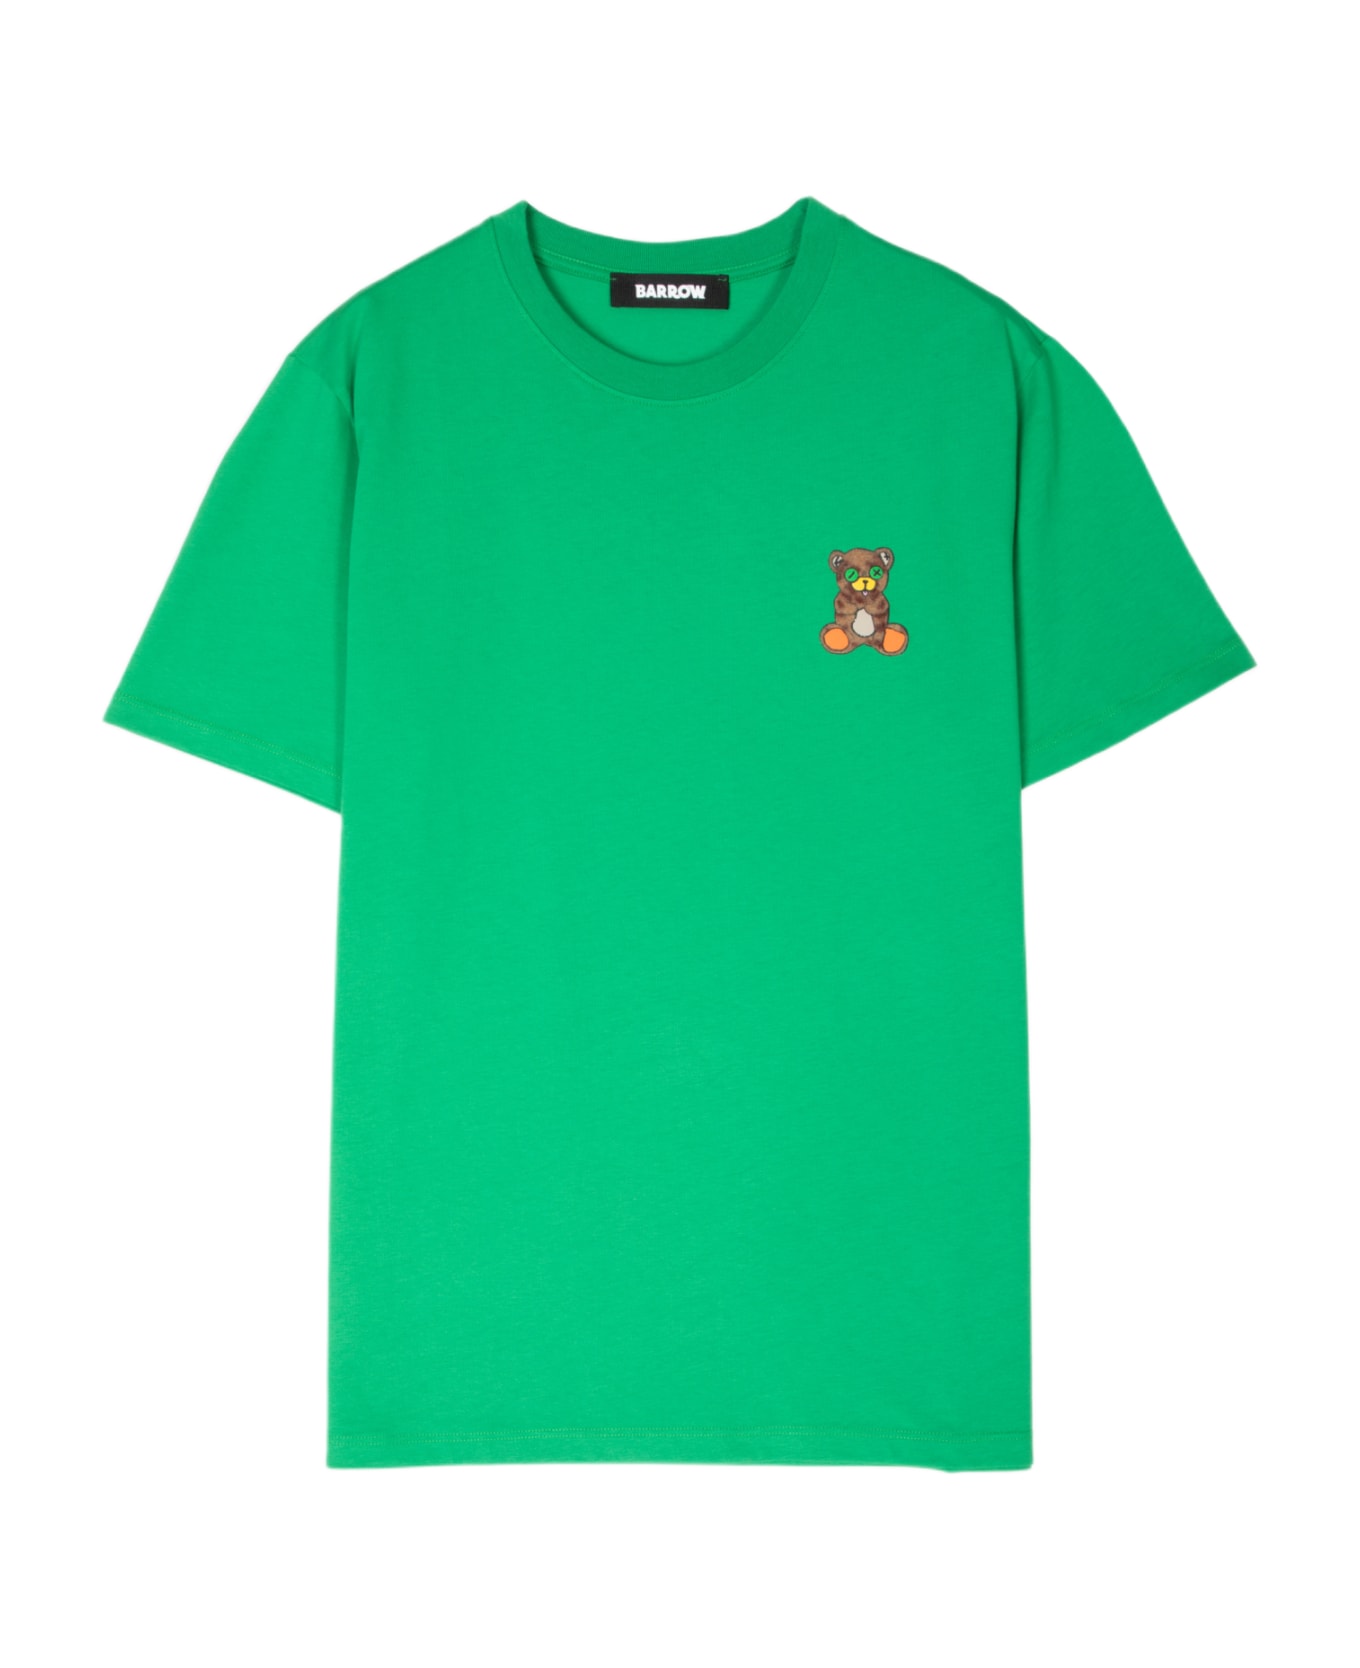 Barrow Jersey T-shirt Unisex Emerald Green T-shirt With Chest Teddy Bear Print - Green シャツ